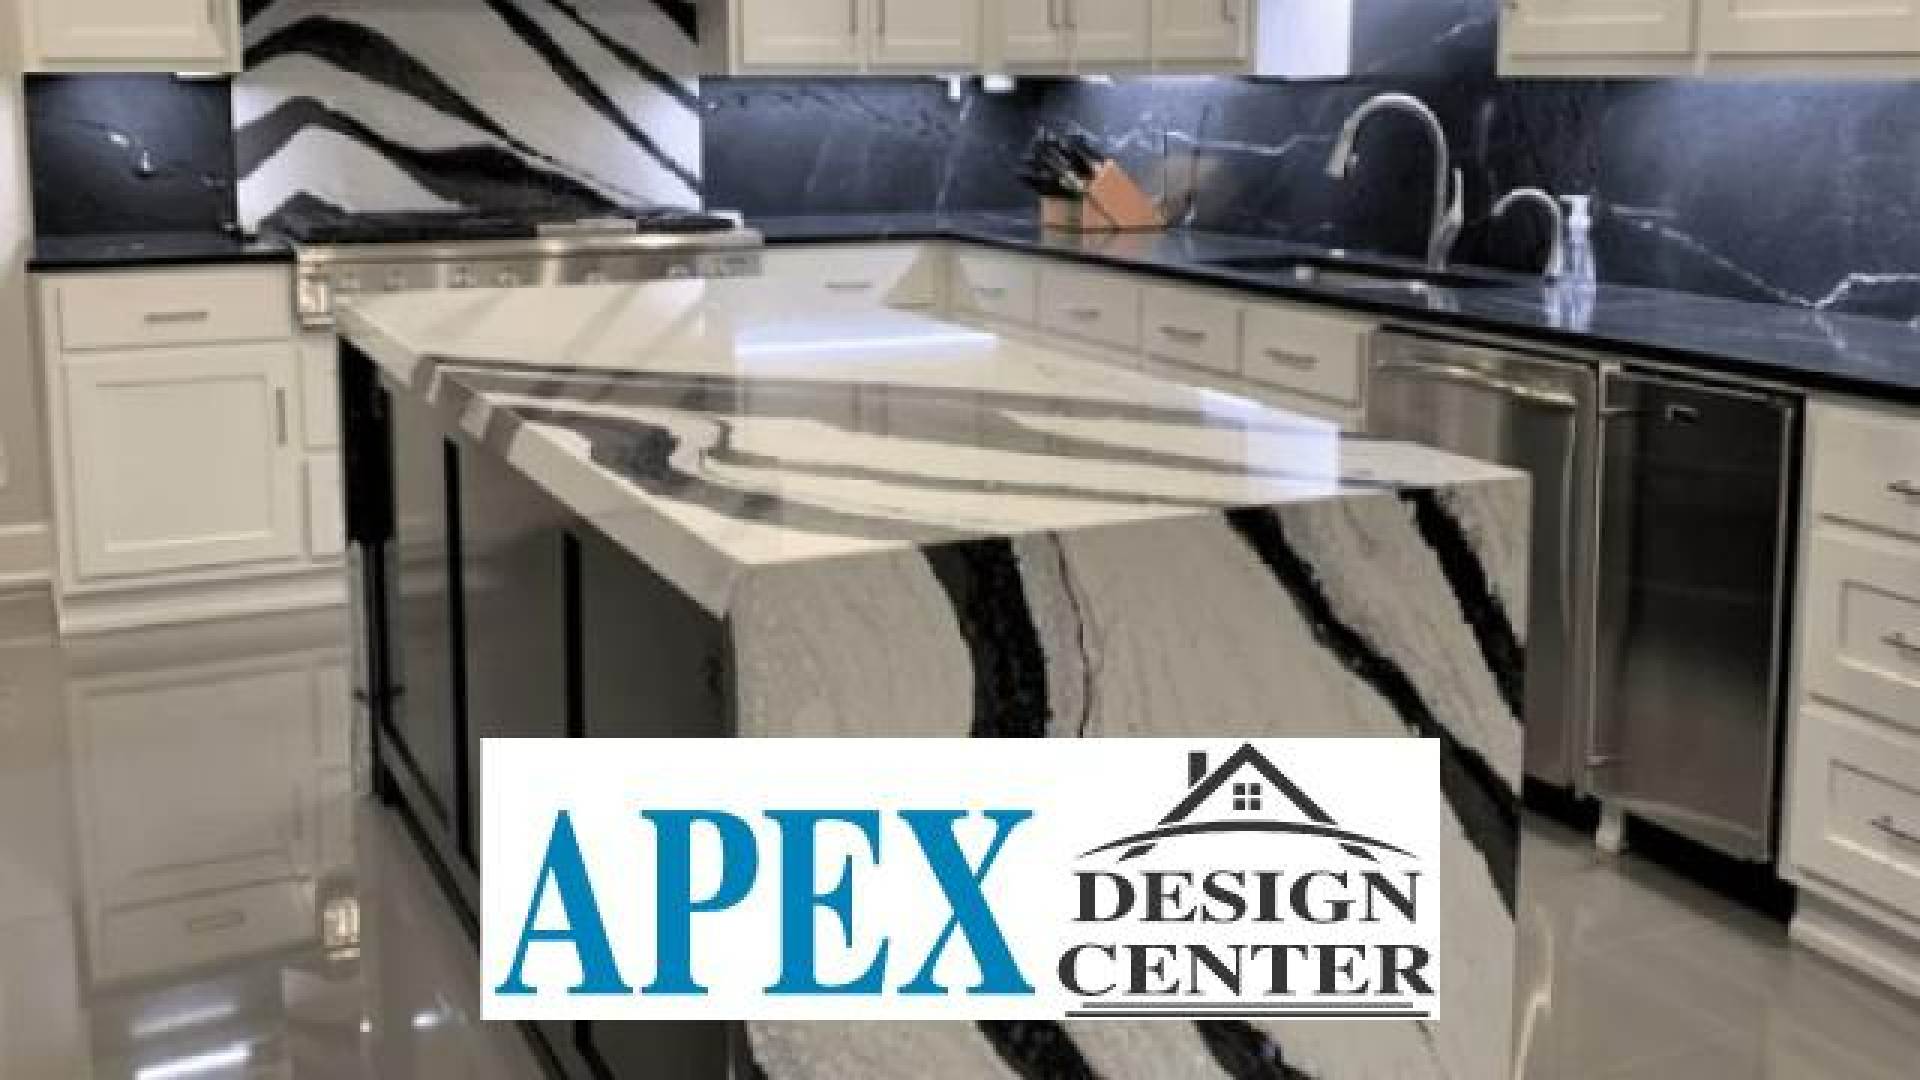 Apex Design Center